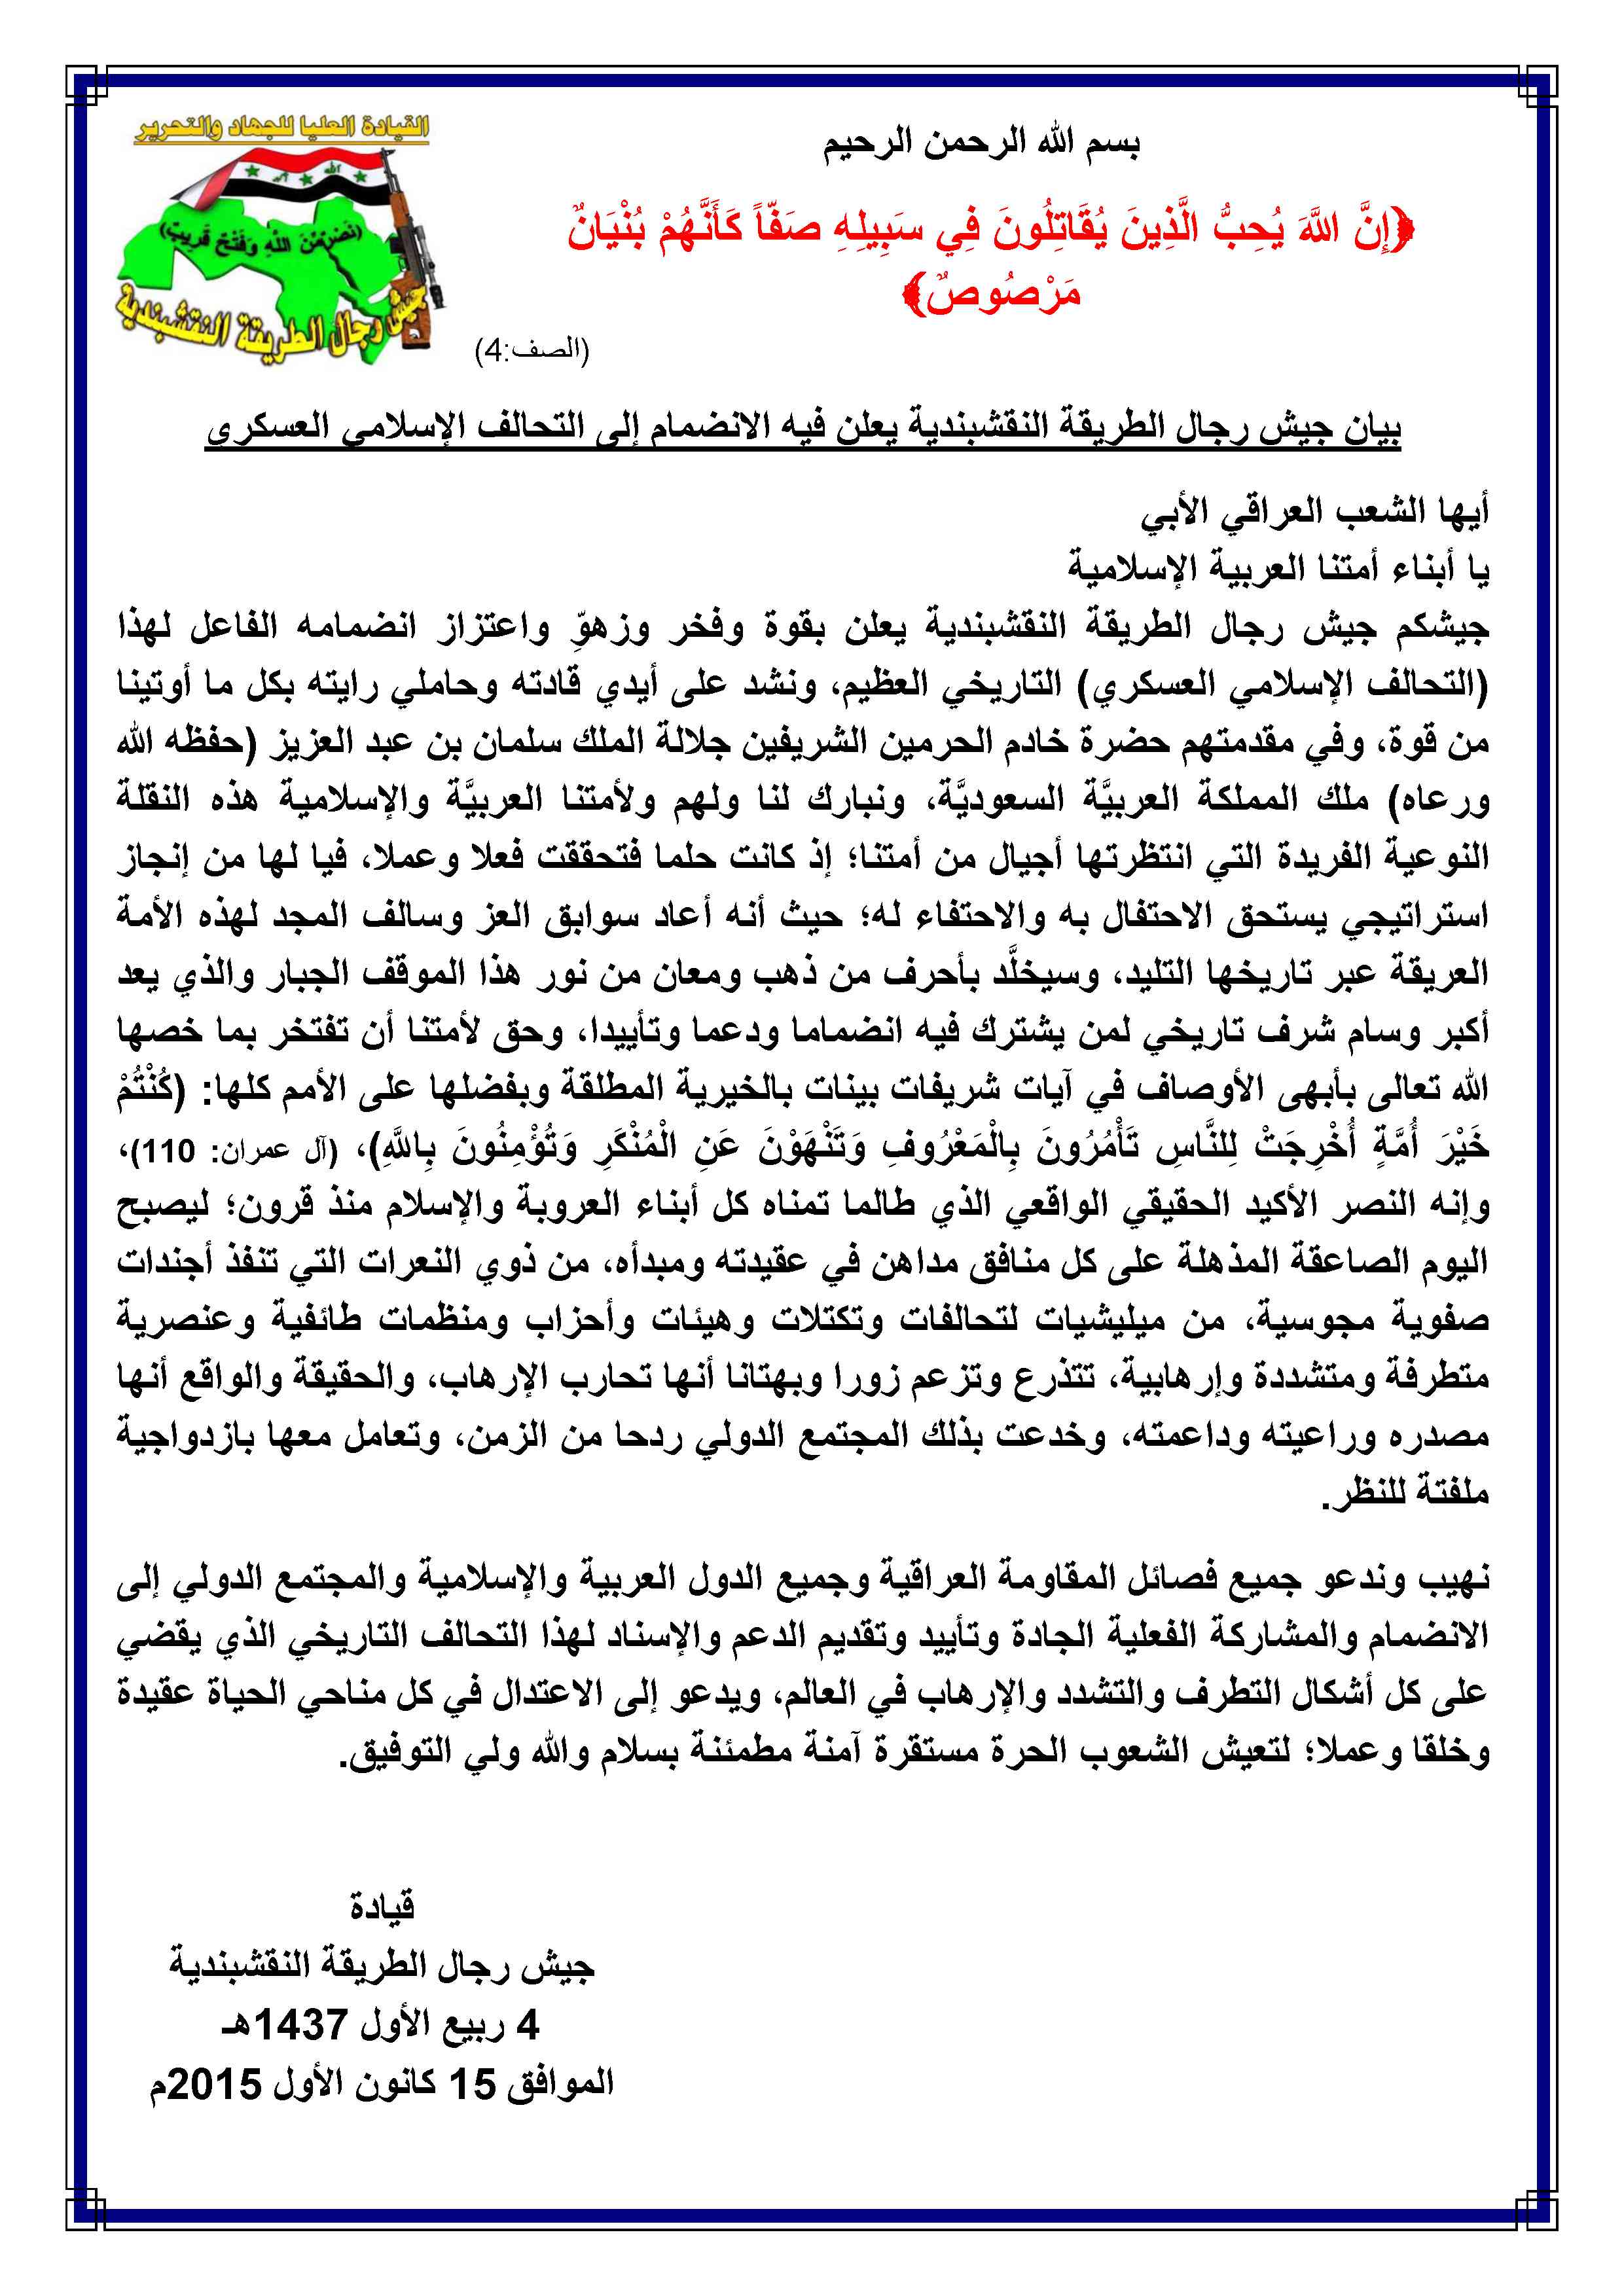 بيان جيش رجال الطريقة النقشبندية يعلن فيه الانضمام إلى التحالف الإسلامي العسكري 15-12-2015